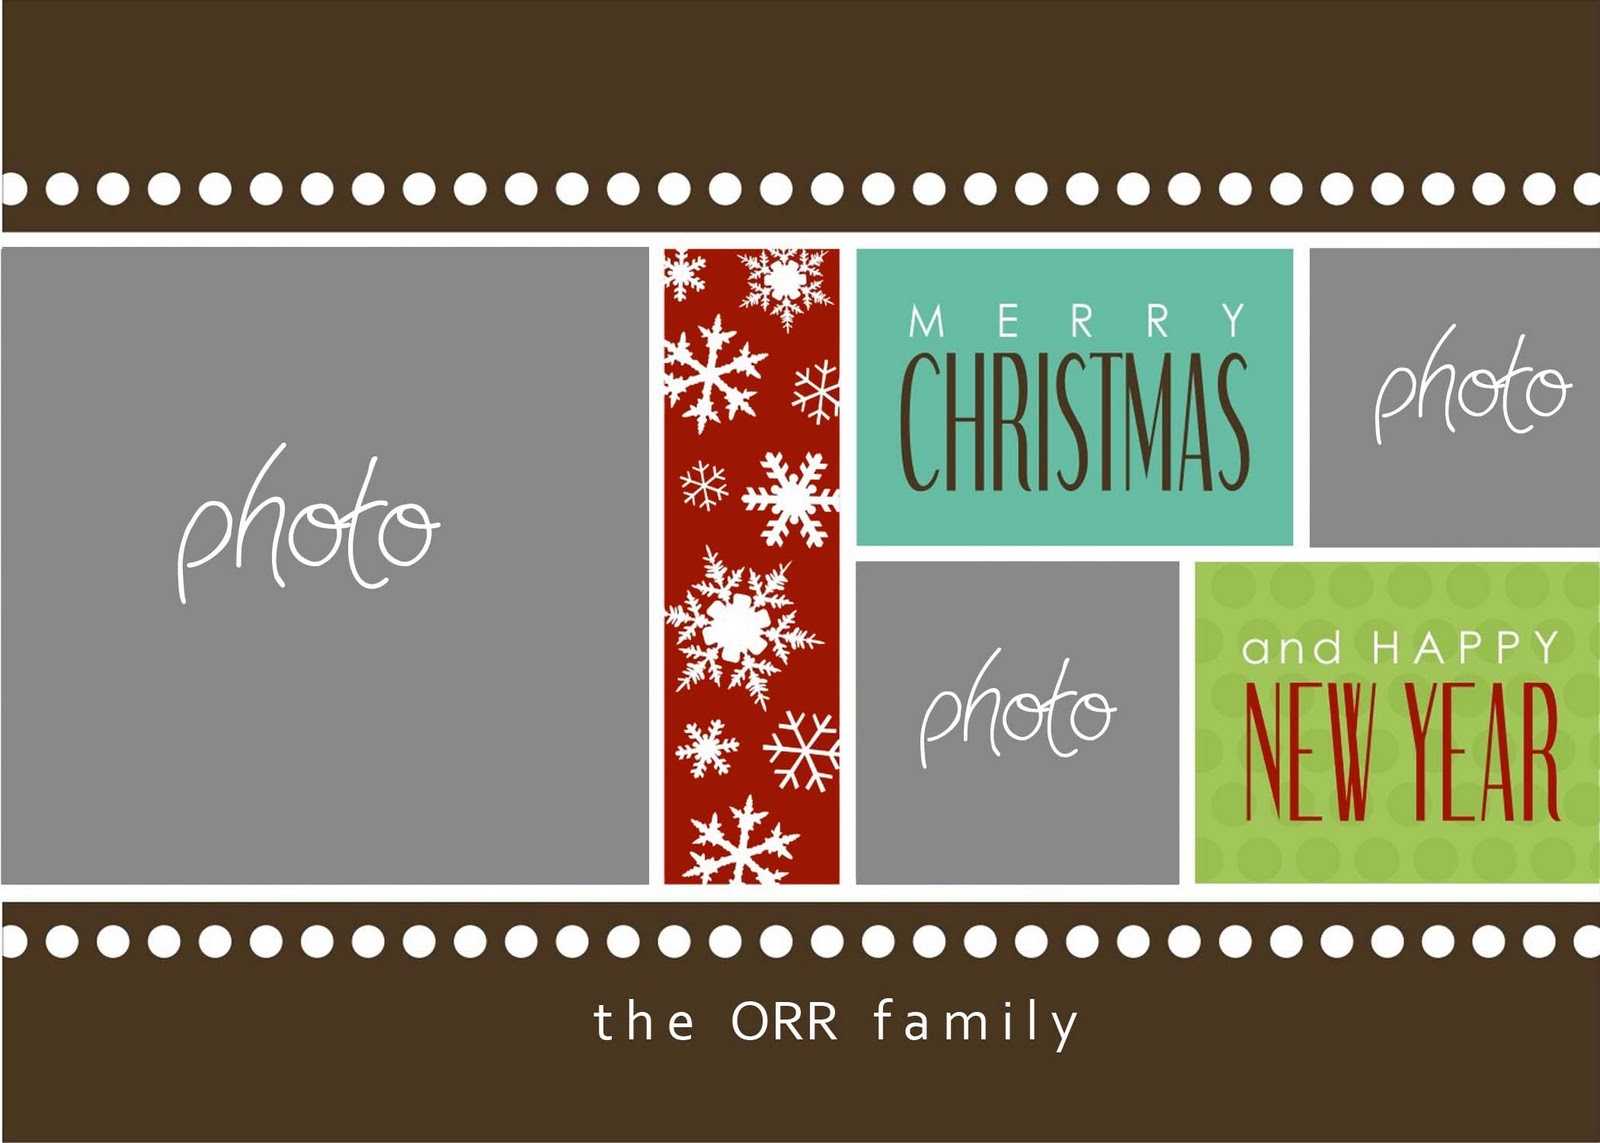 Christmas Cards Templates Photoshop ] – Christmas Card In Christmas Photo Card Templates Photoshop